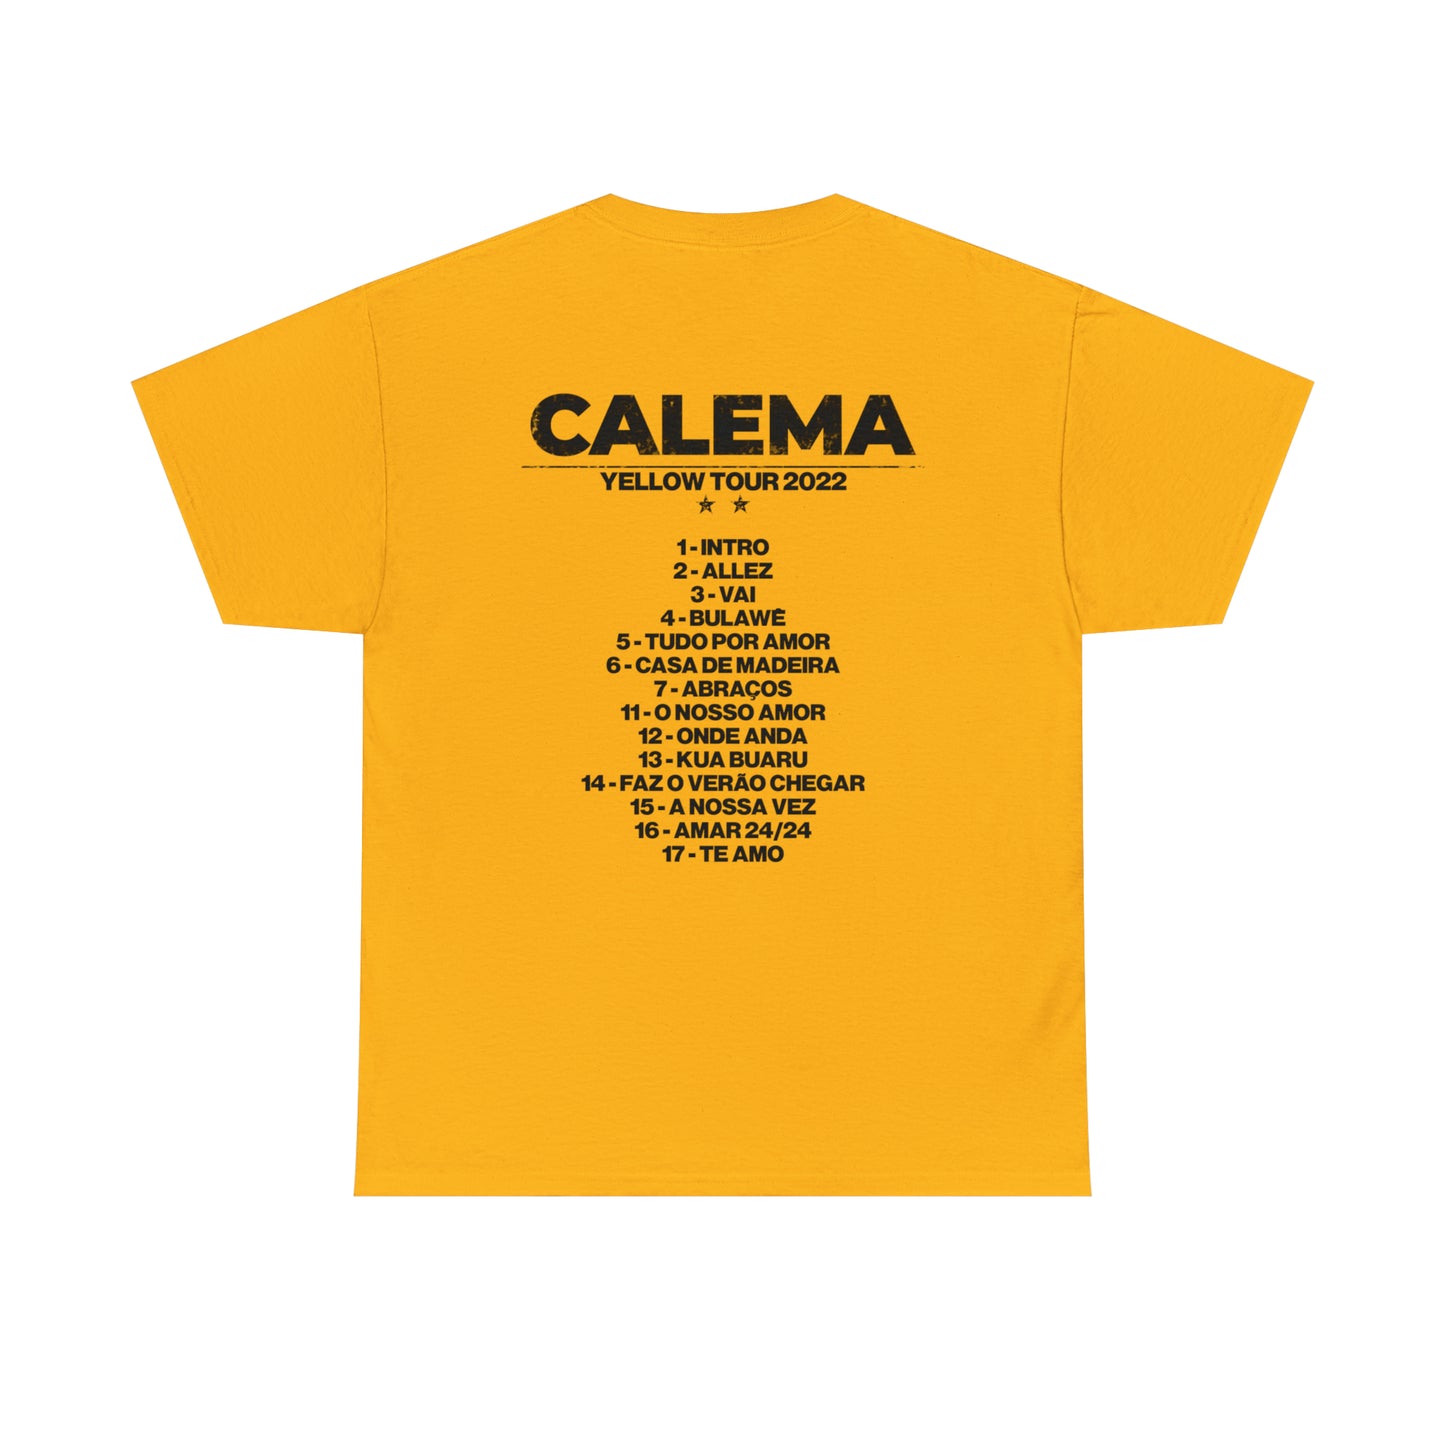 Calema - Yellow Tour 2022